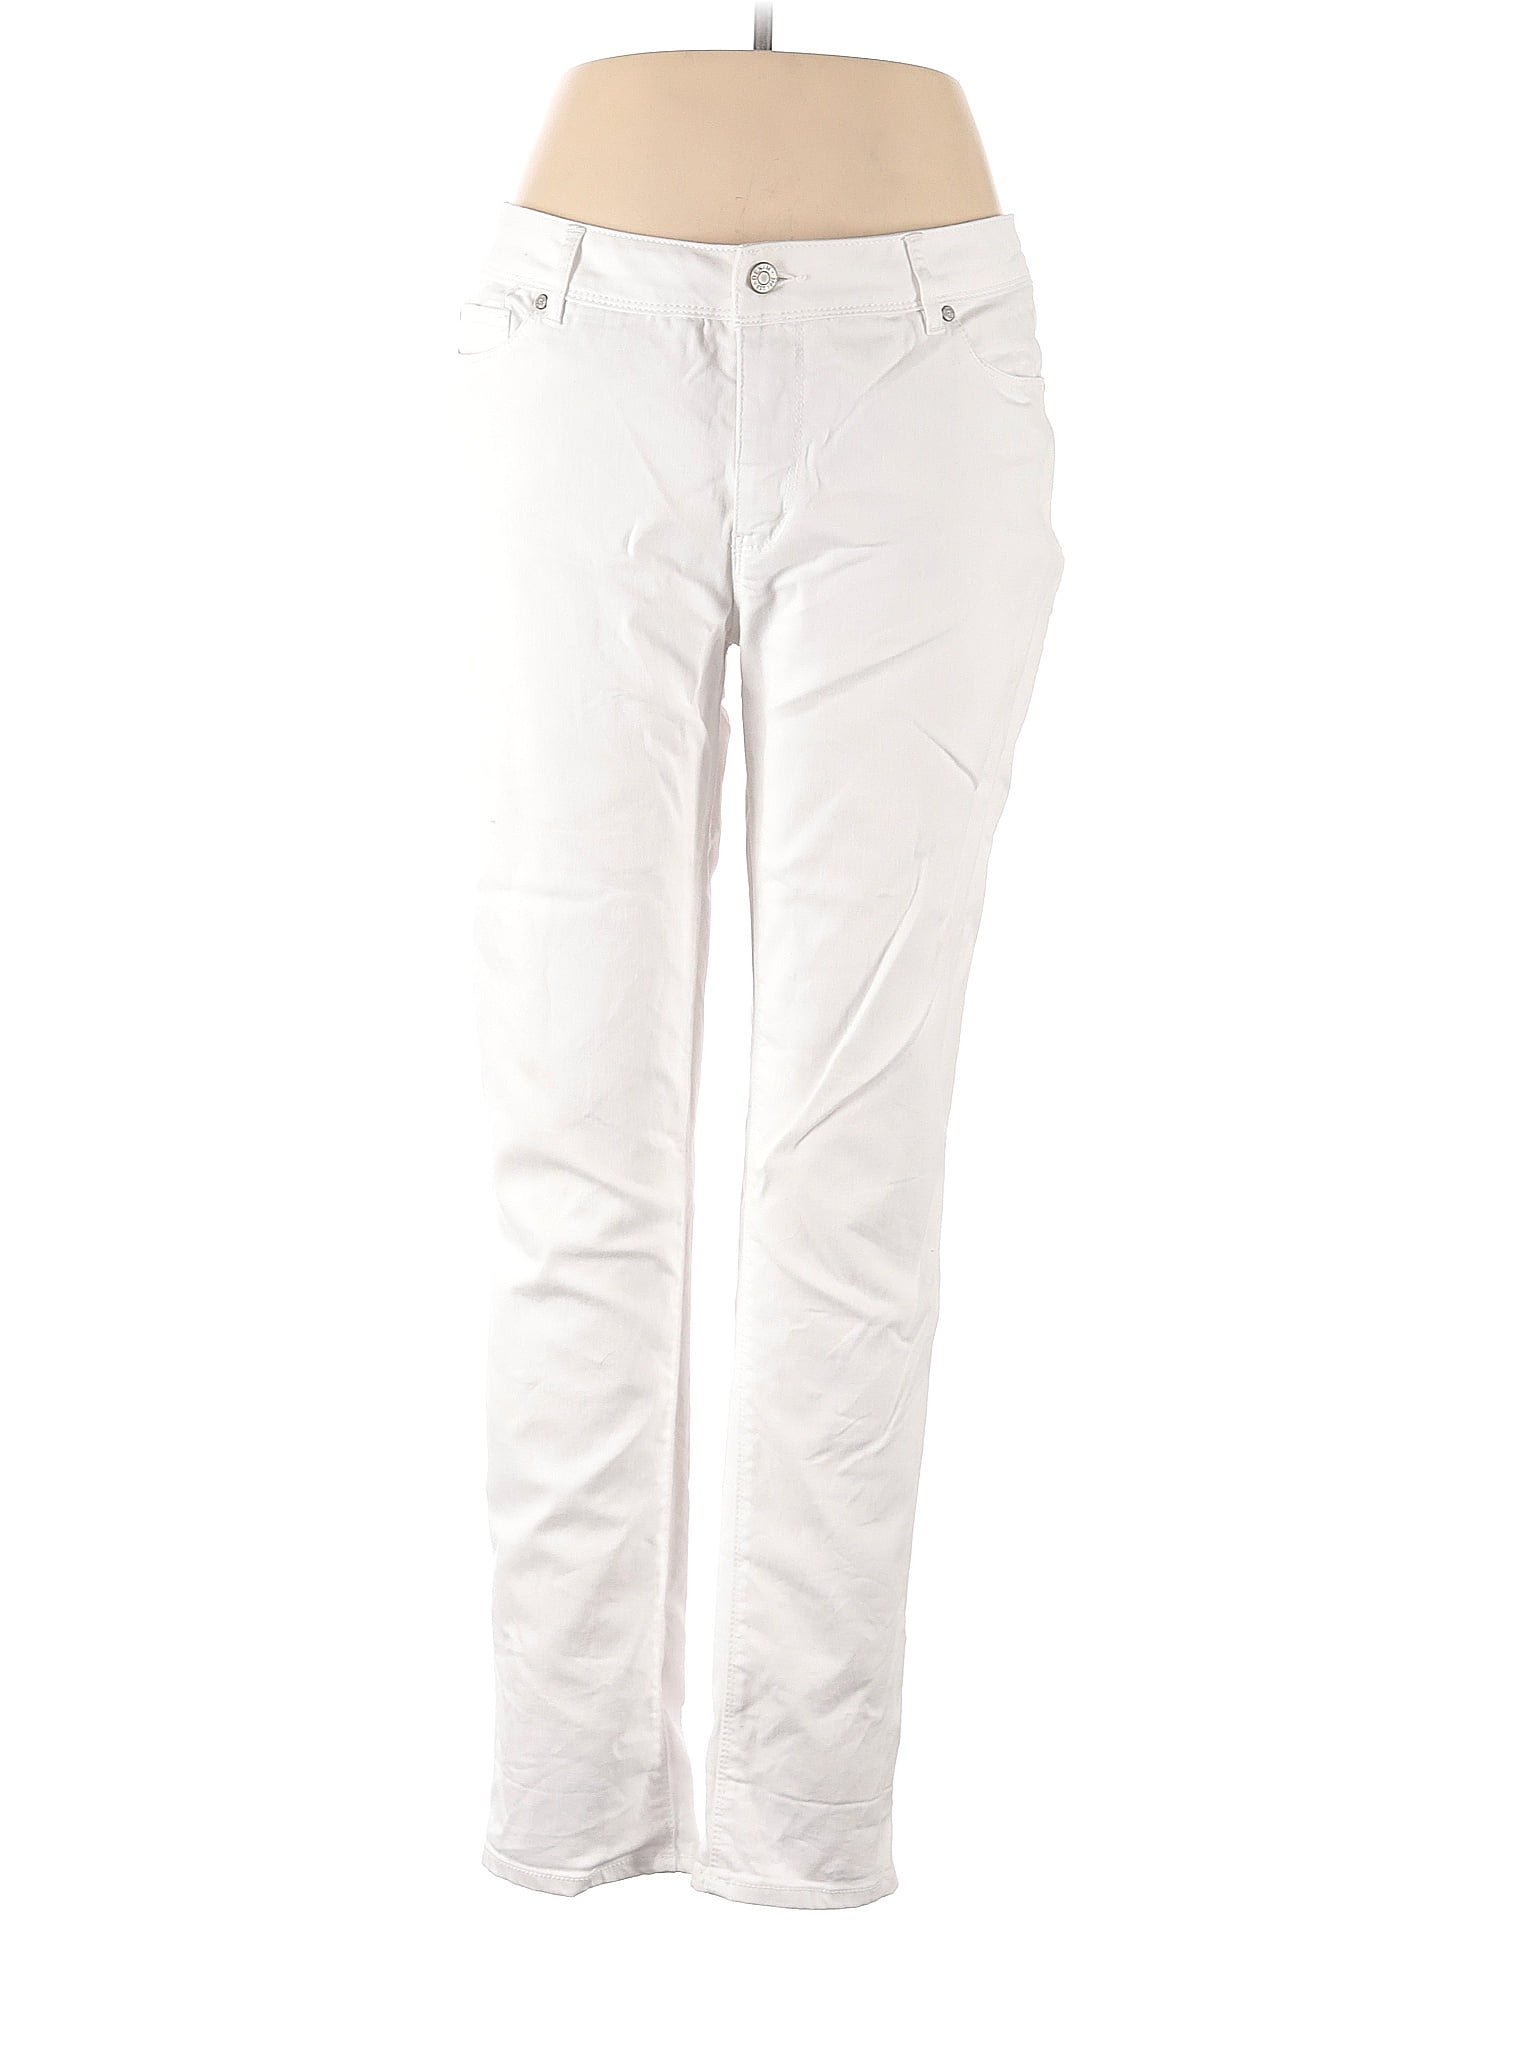 C established 1946 White Jeans Size 14 - 60% off | thredUP